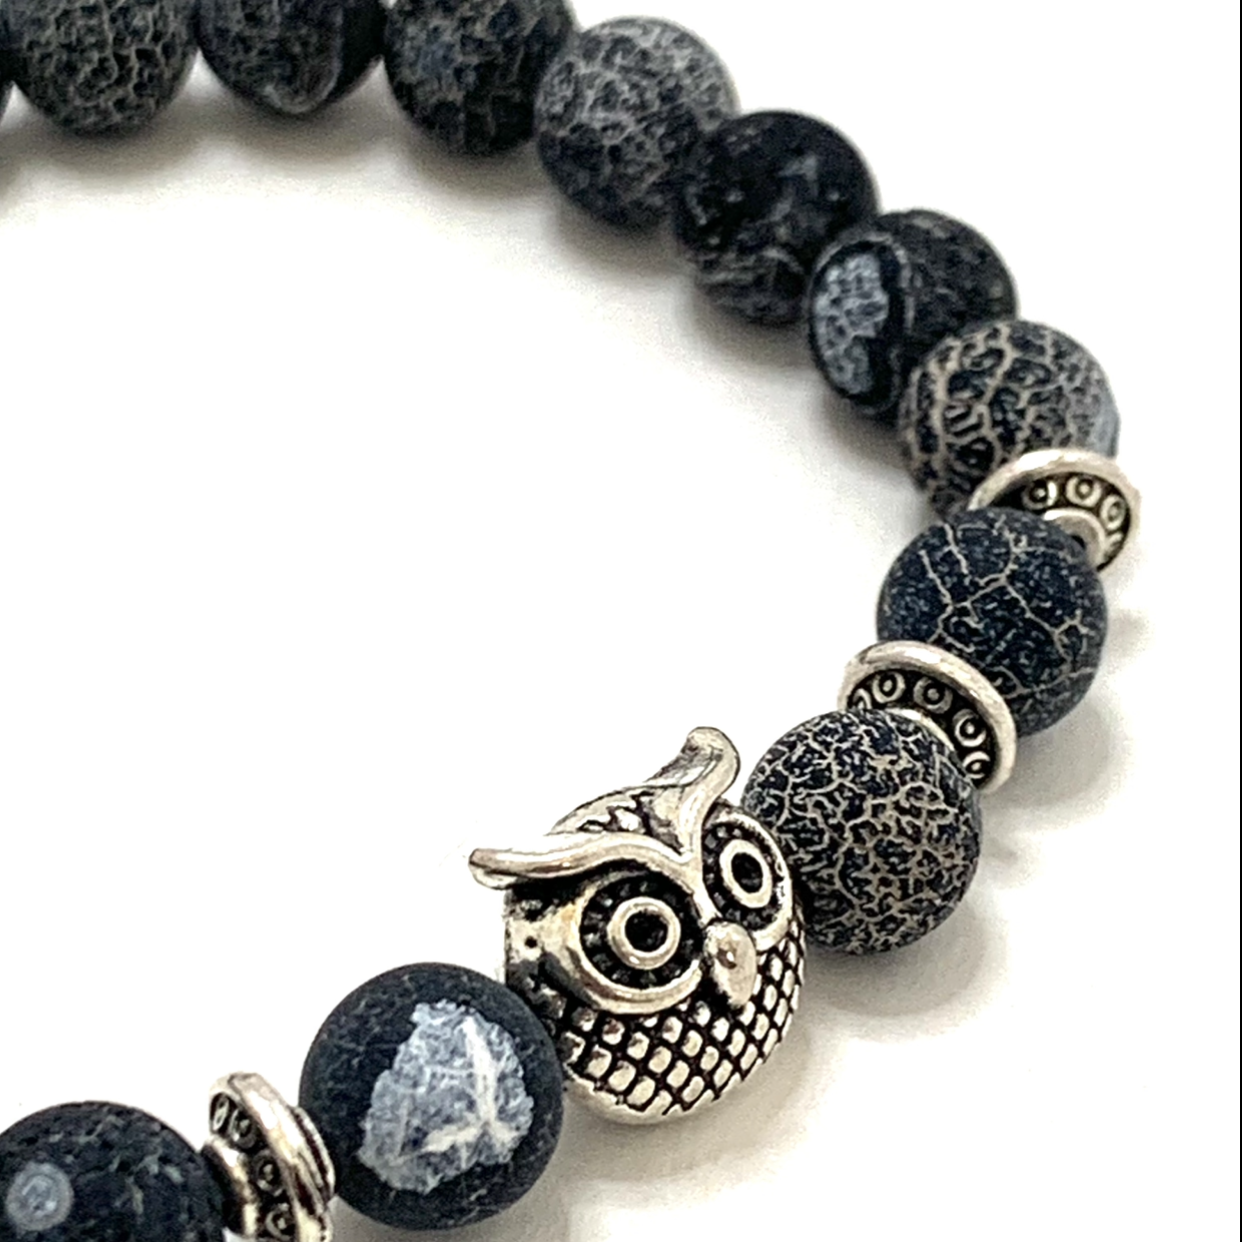 Owl Bracelet / anklet